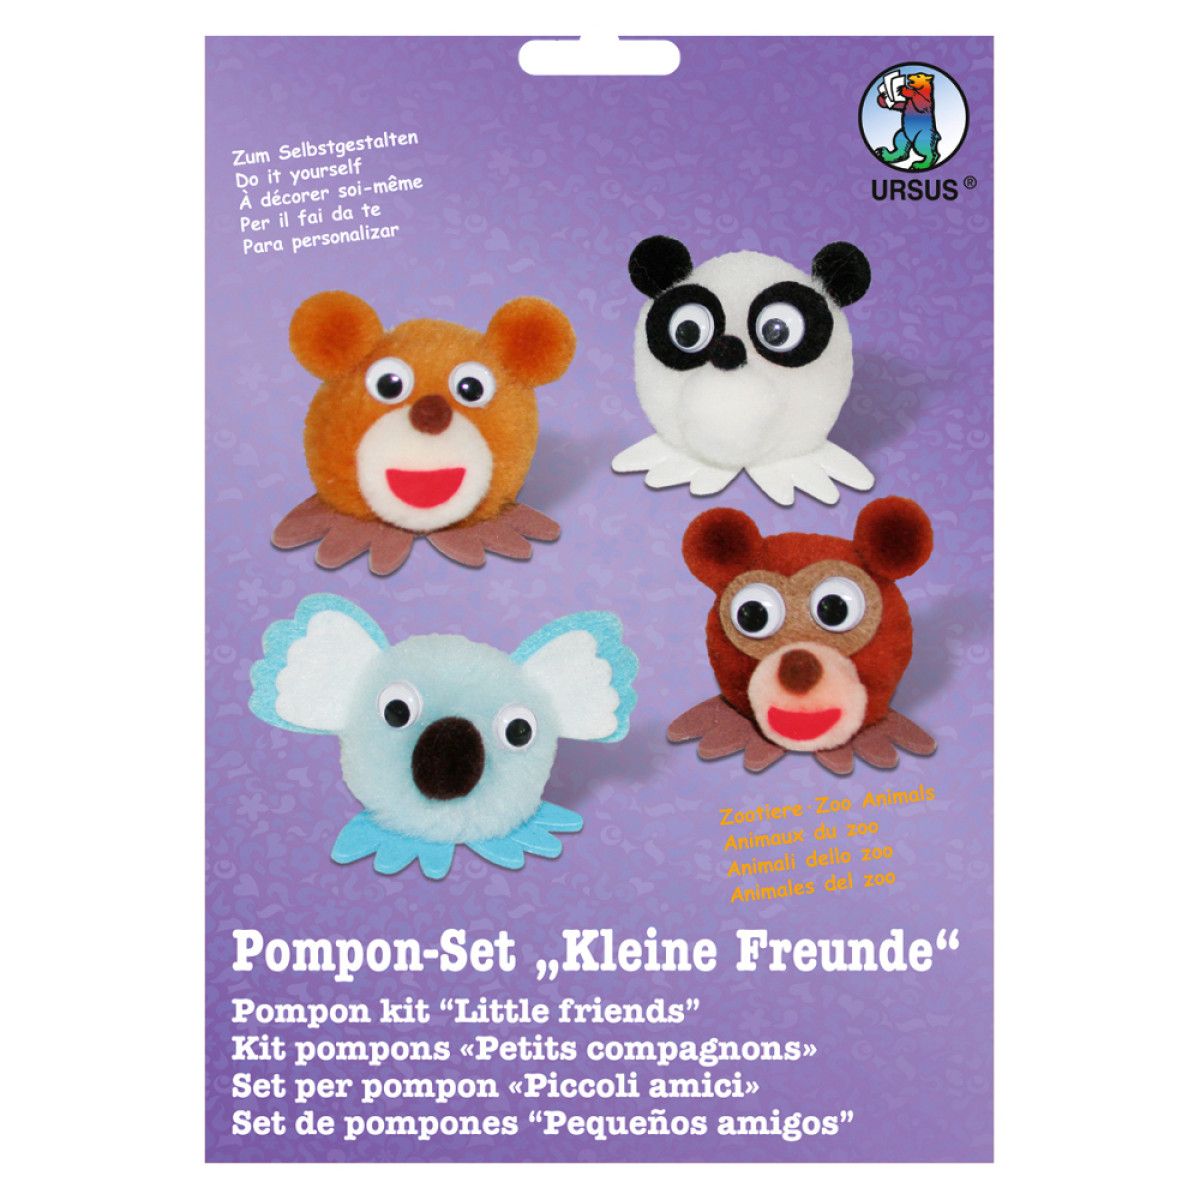 Pompon-Set "Kleine Freunde" Zootiere